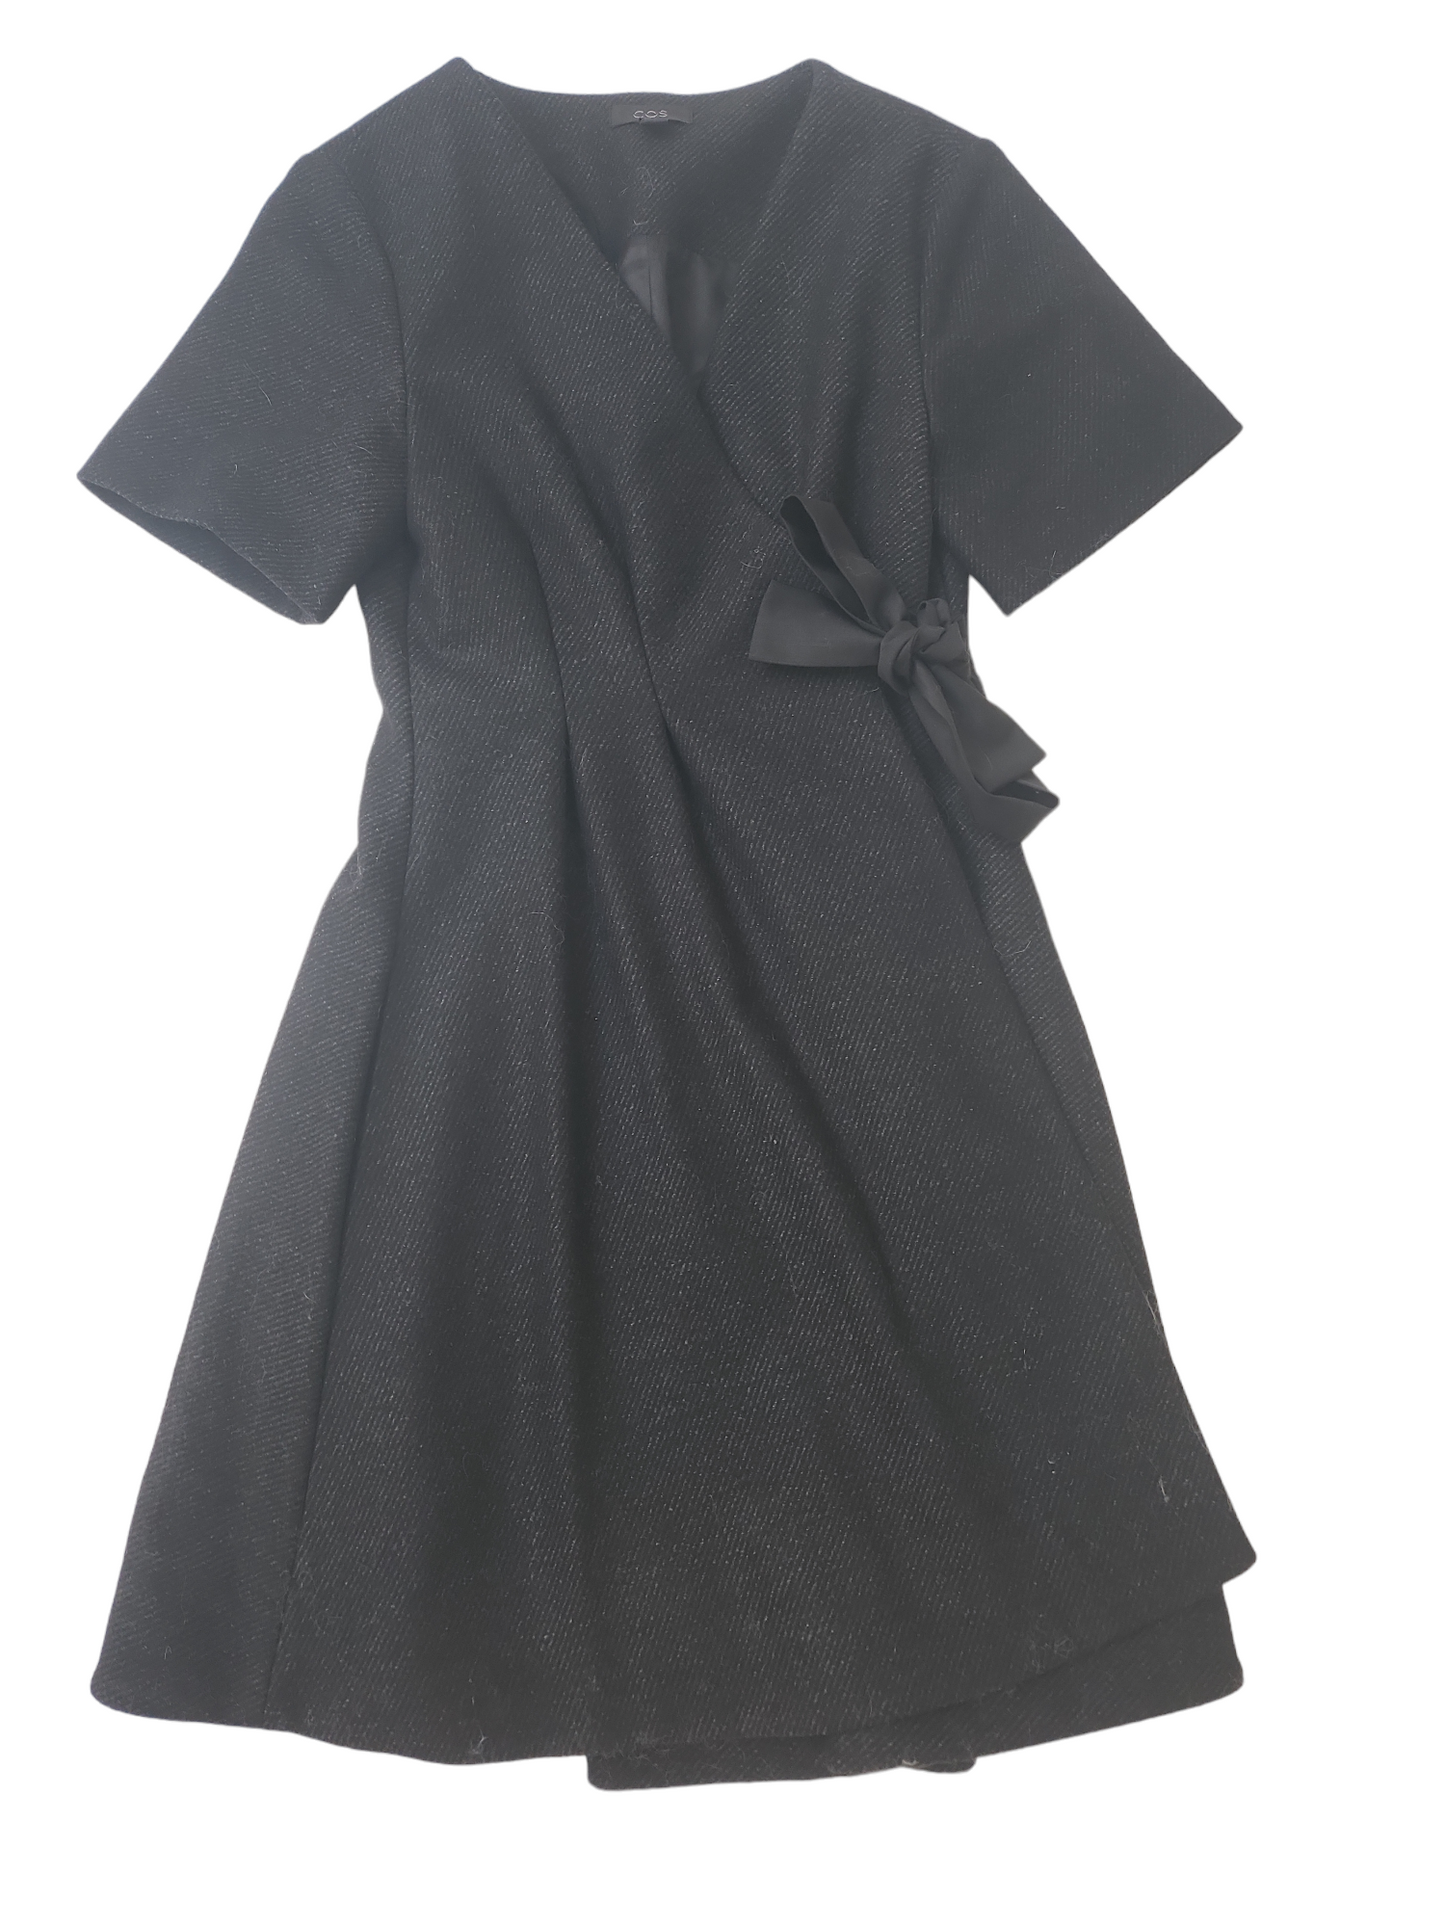 COS Black Wool Wrap Around Dress Size 6